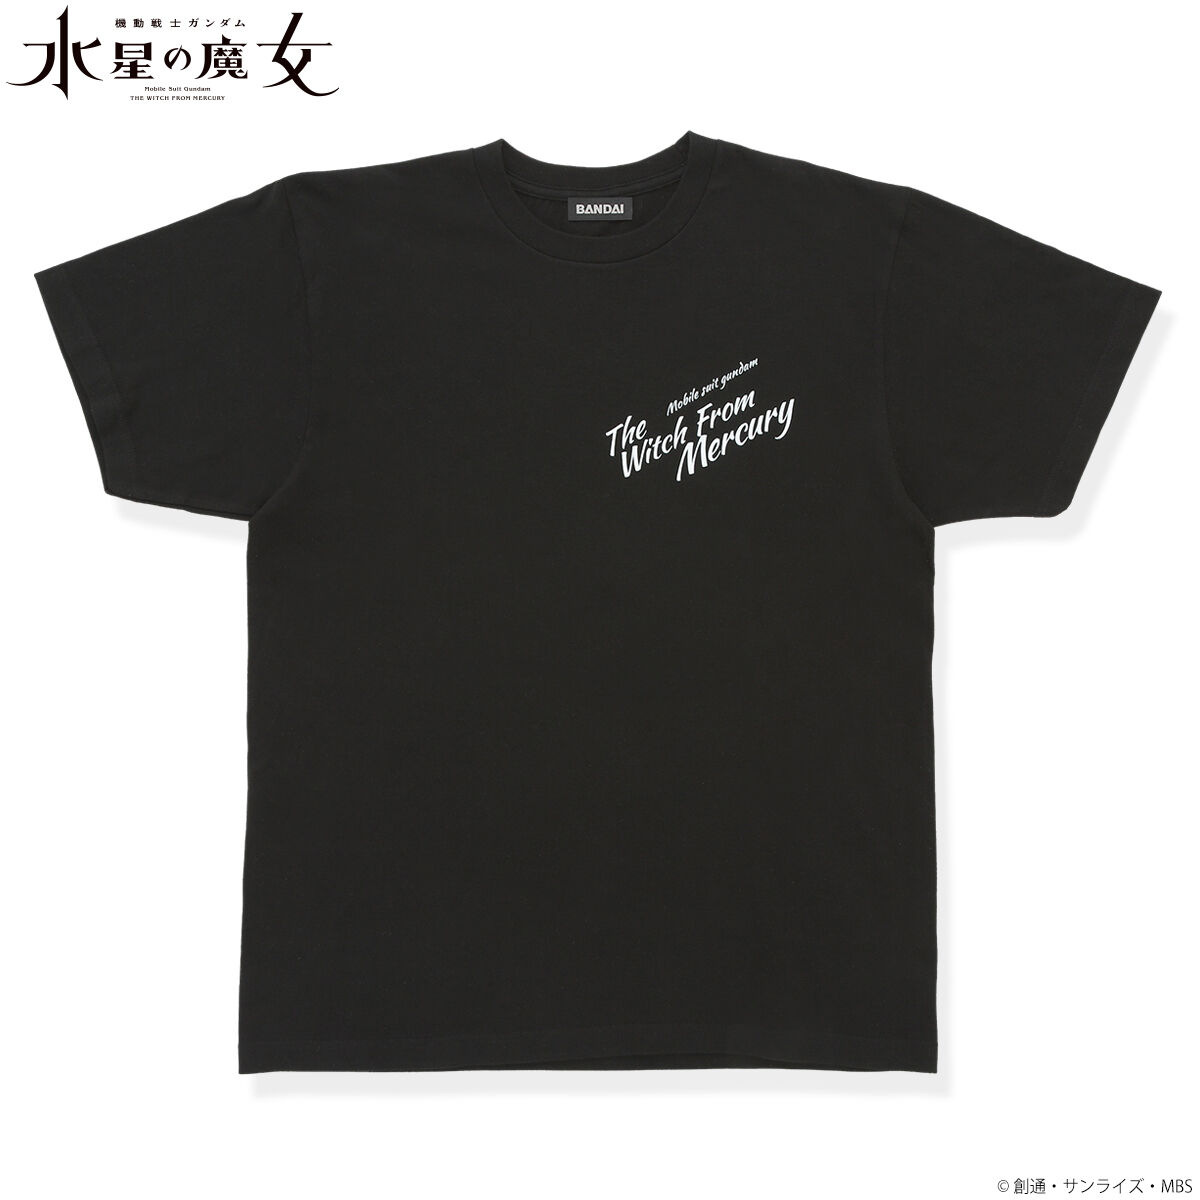 機動戦士ガンダム 水星の魔女EXPO Tシャツ ブラック サイズ L ②